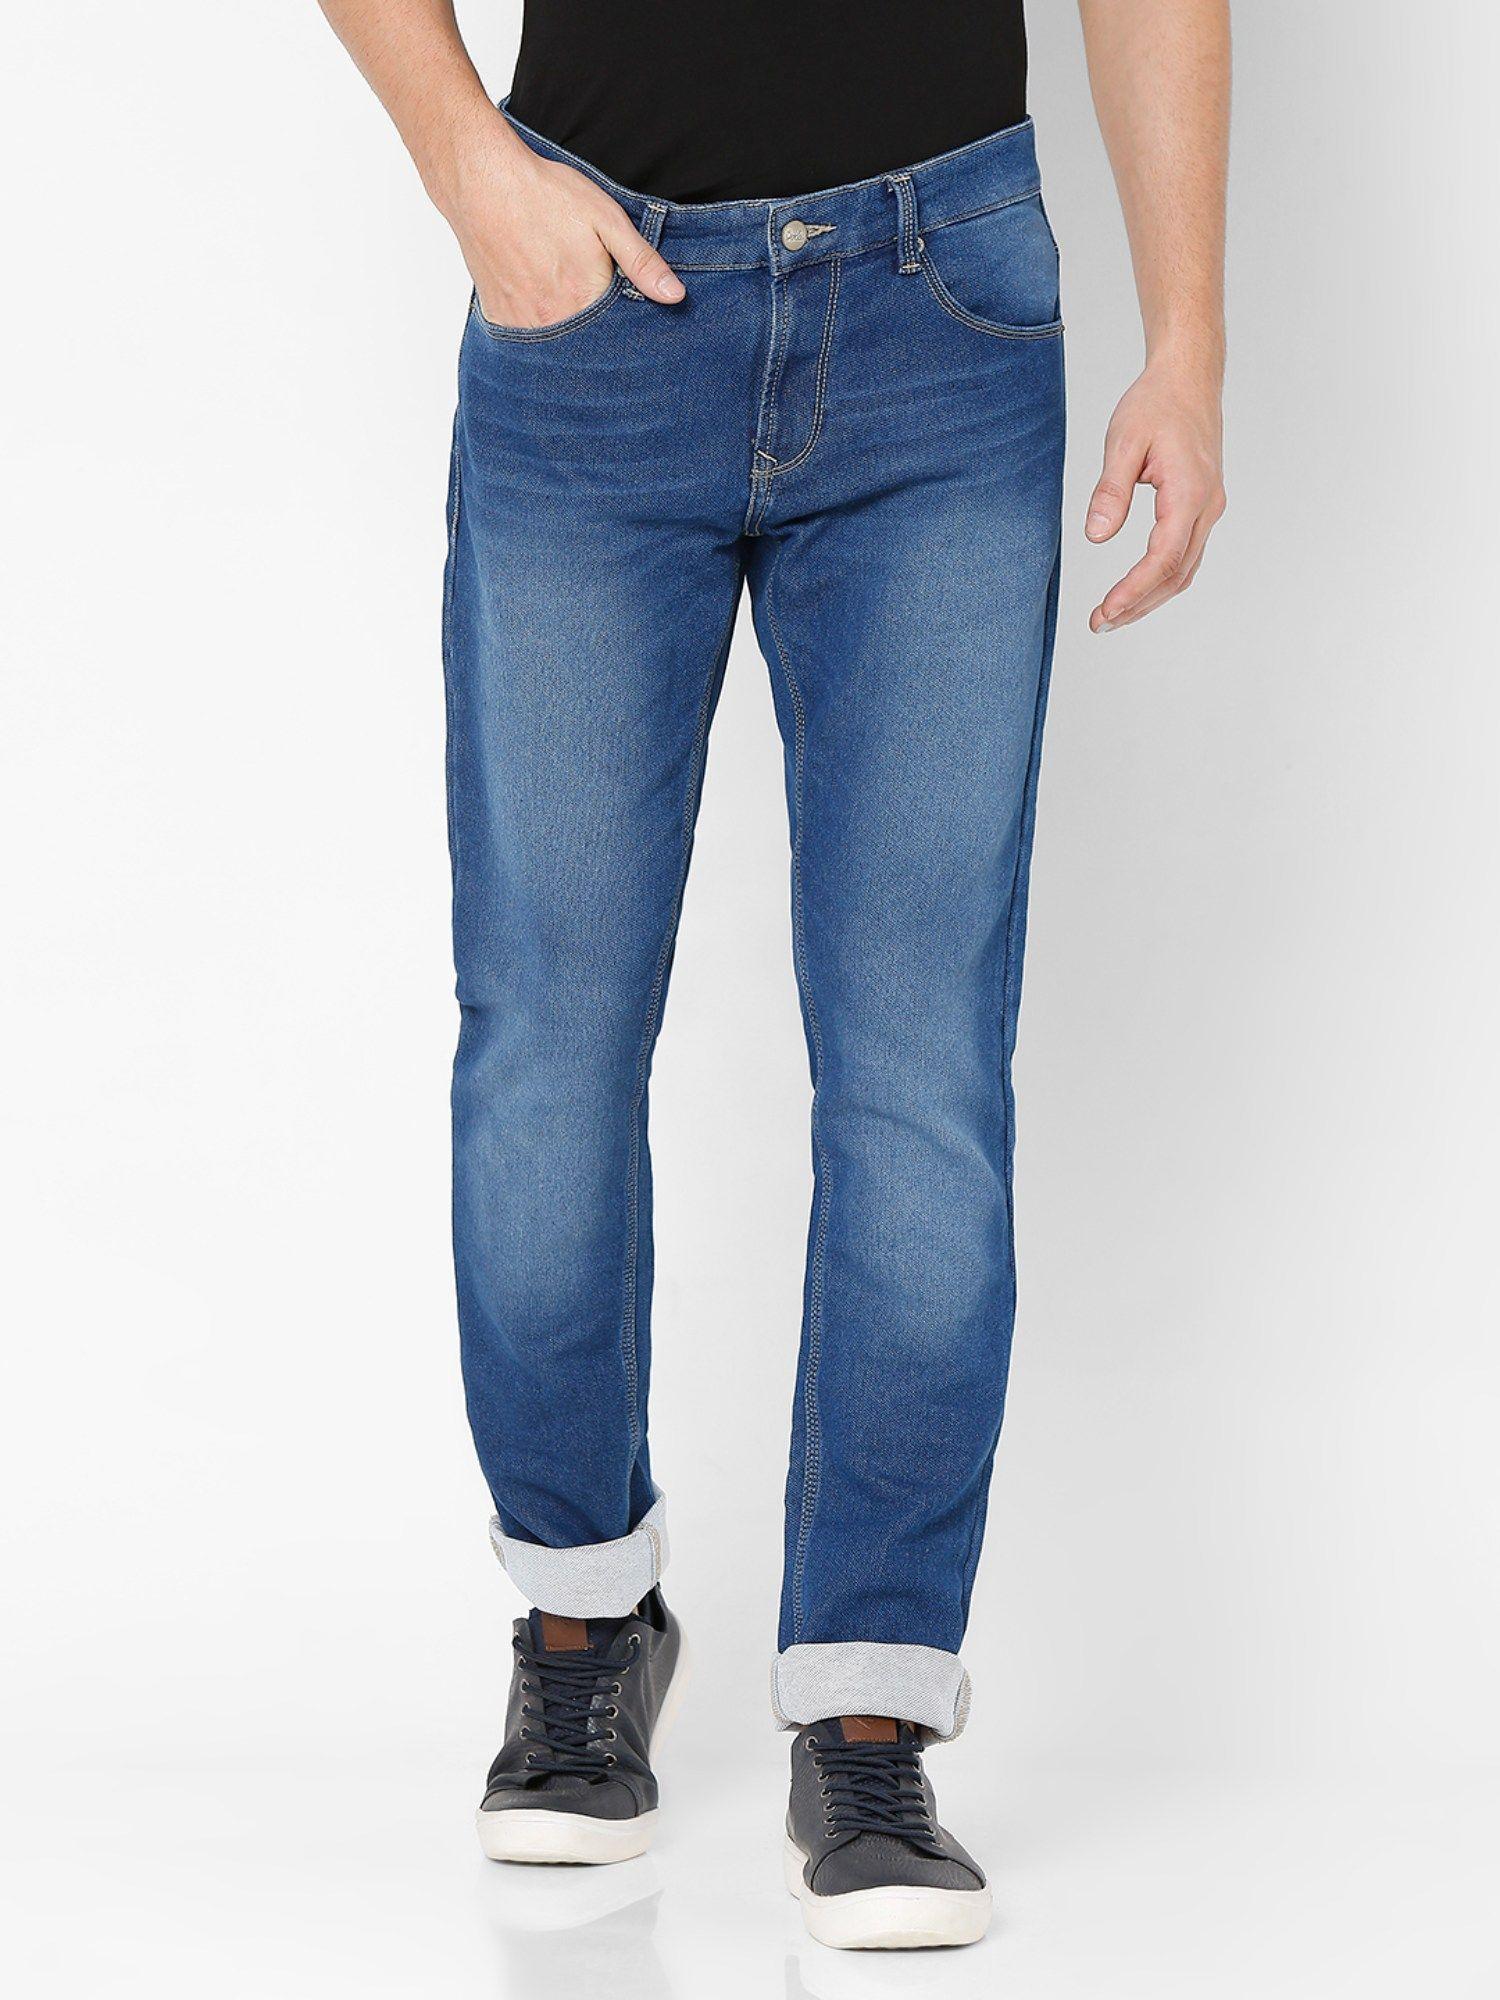 blue slim fit jeans for men